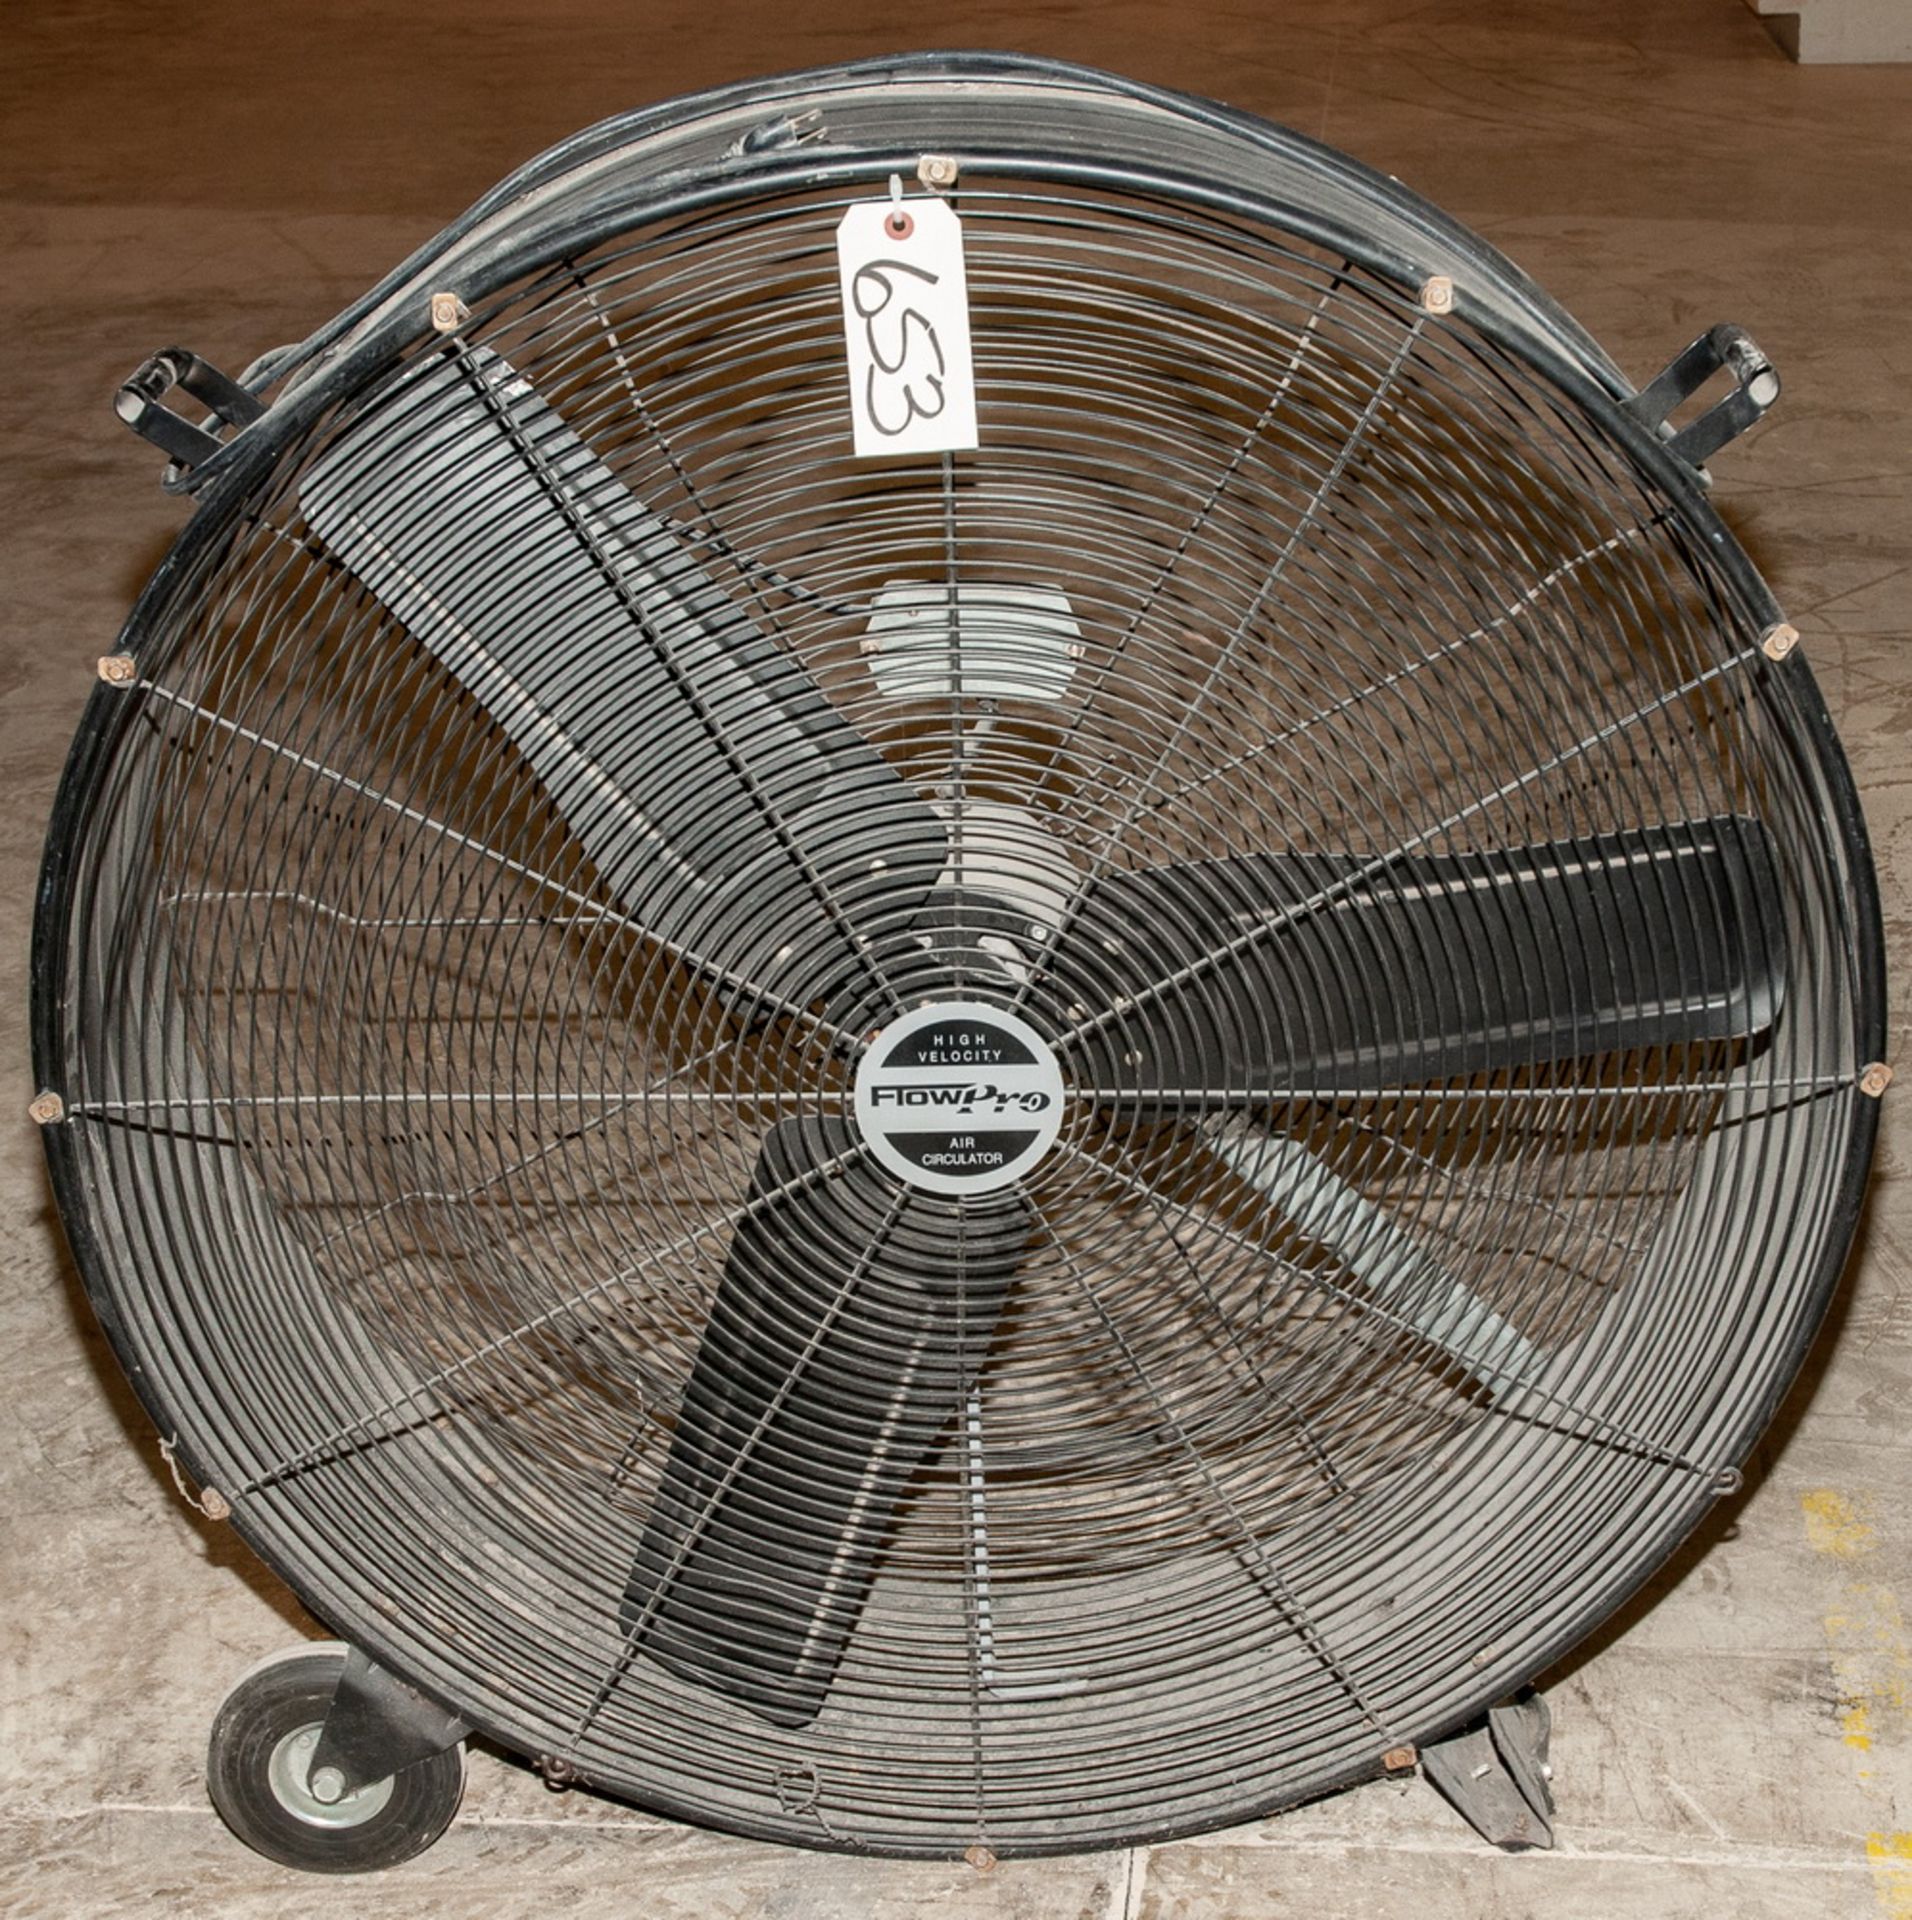 Flow Pro 36 Inch Barrel Fan